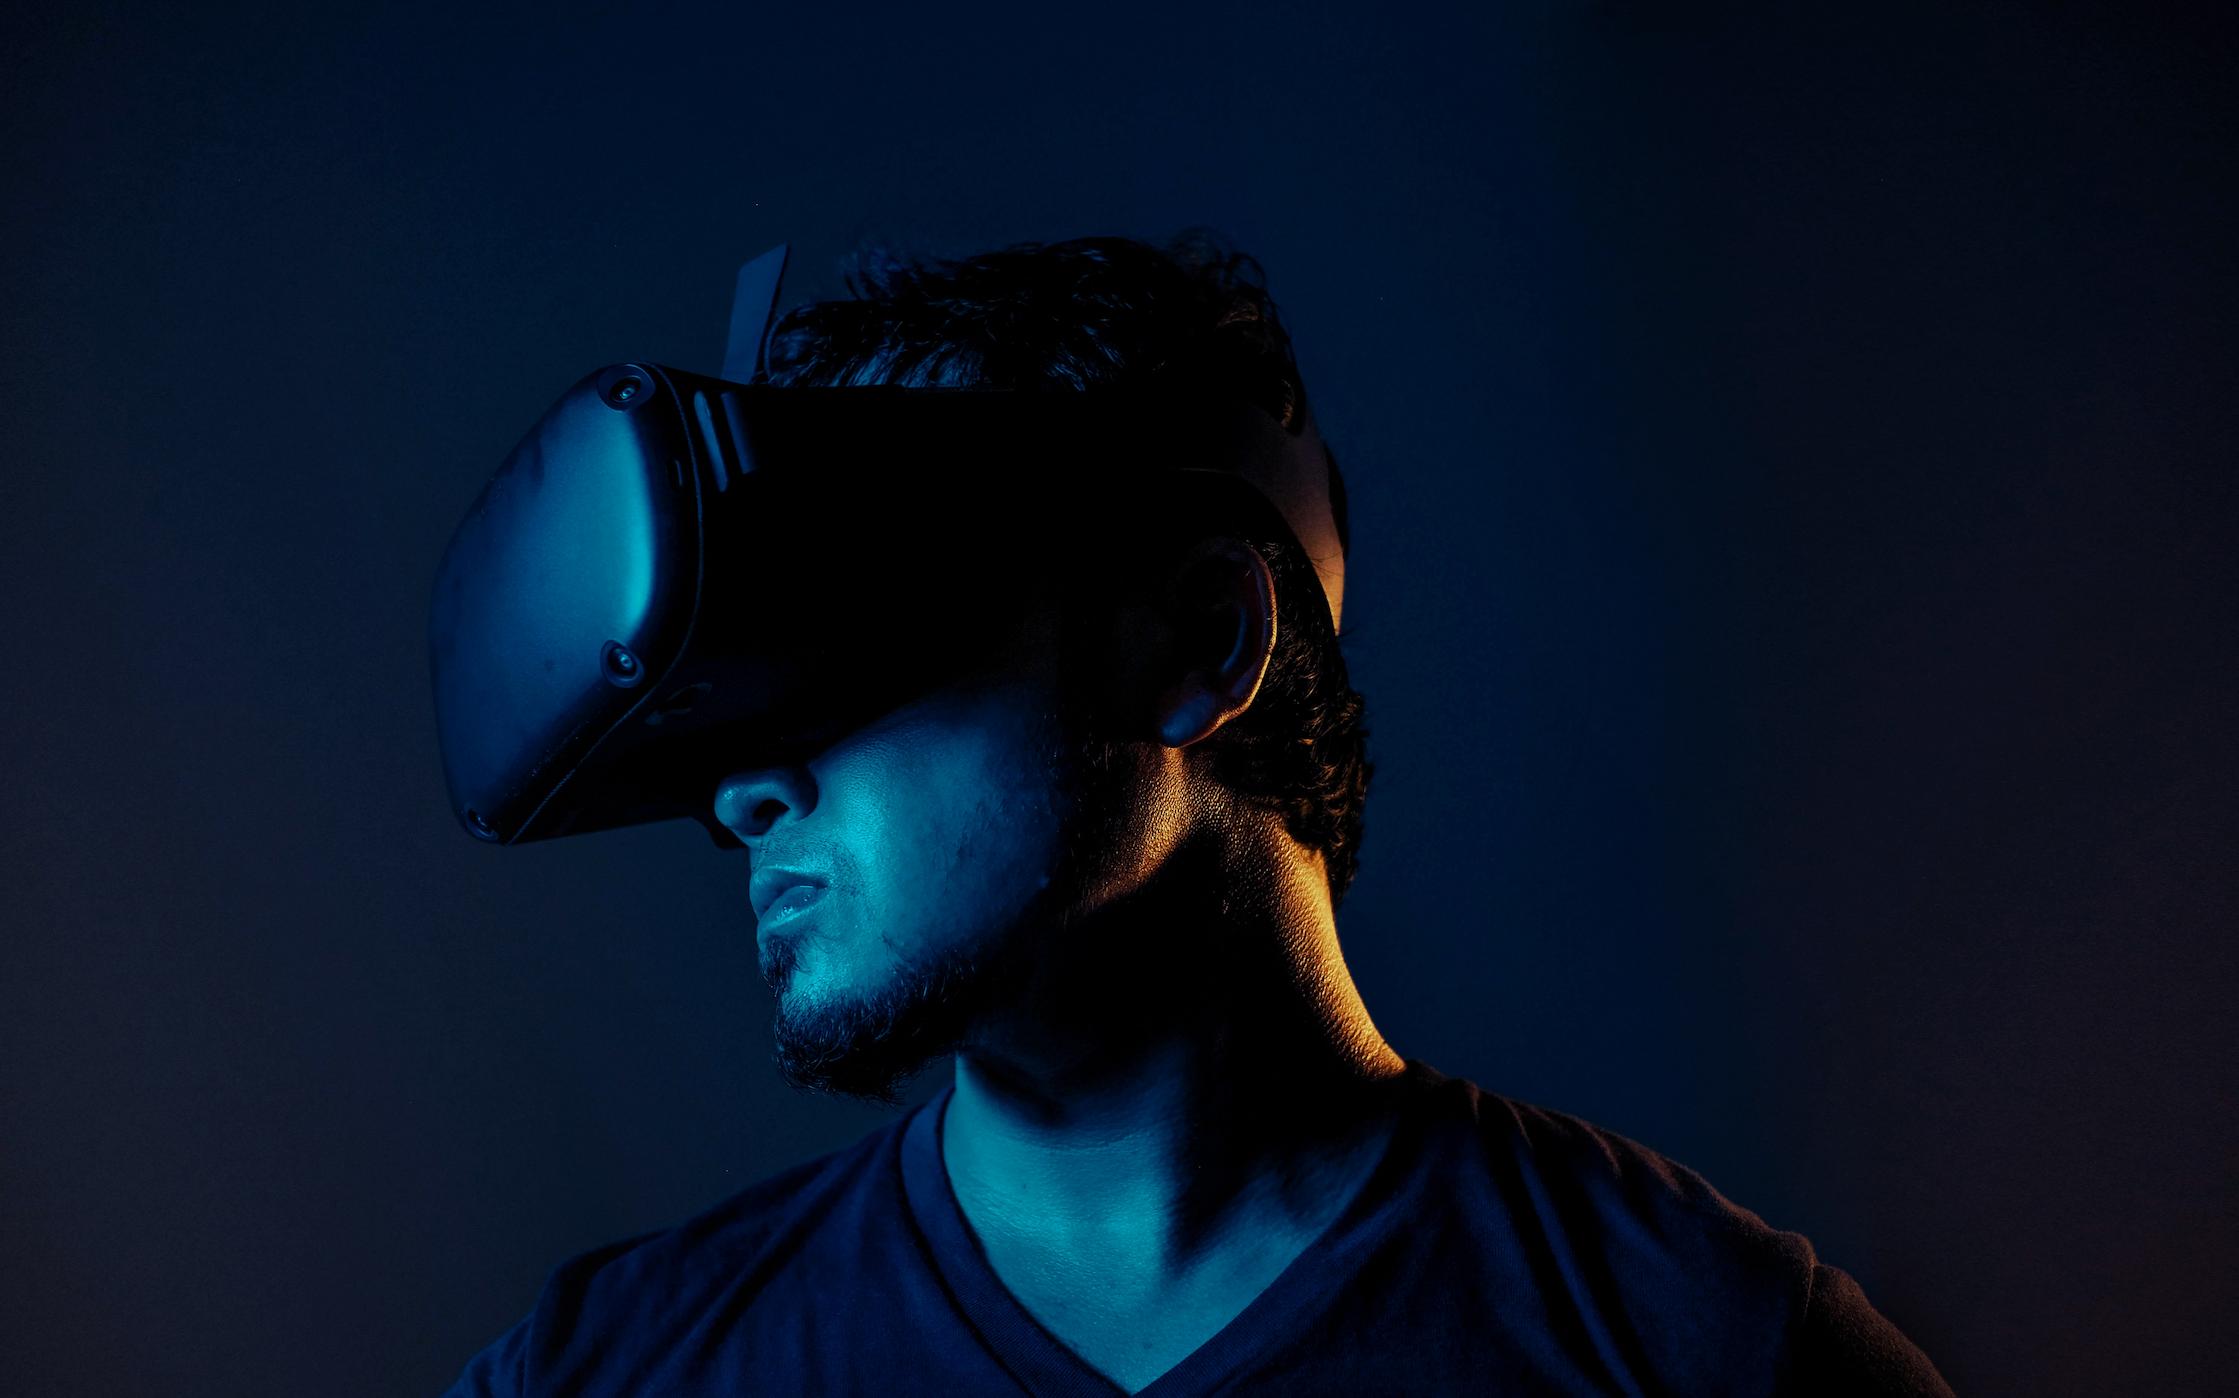 VR player